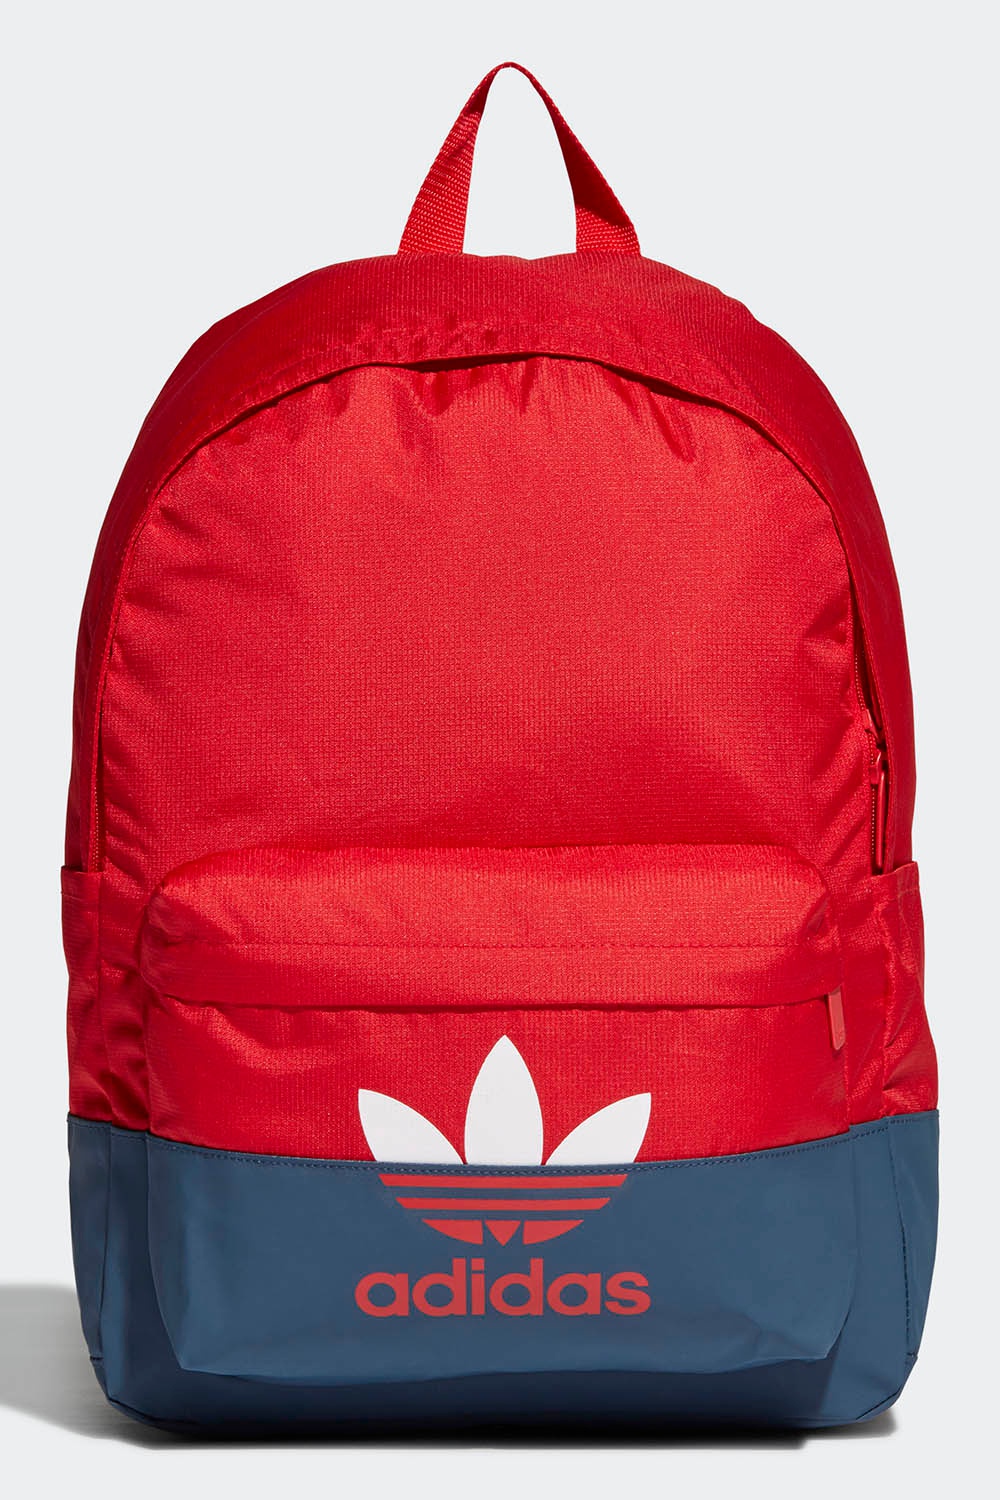 Adidas Originals Backpack | Odel.lk